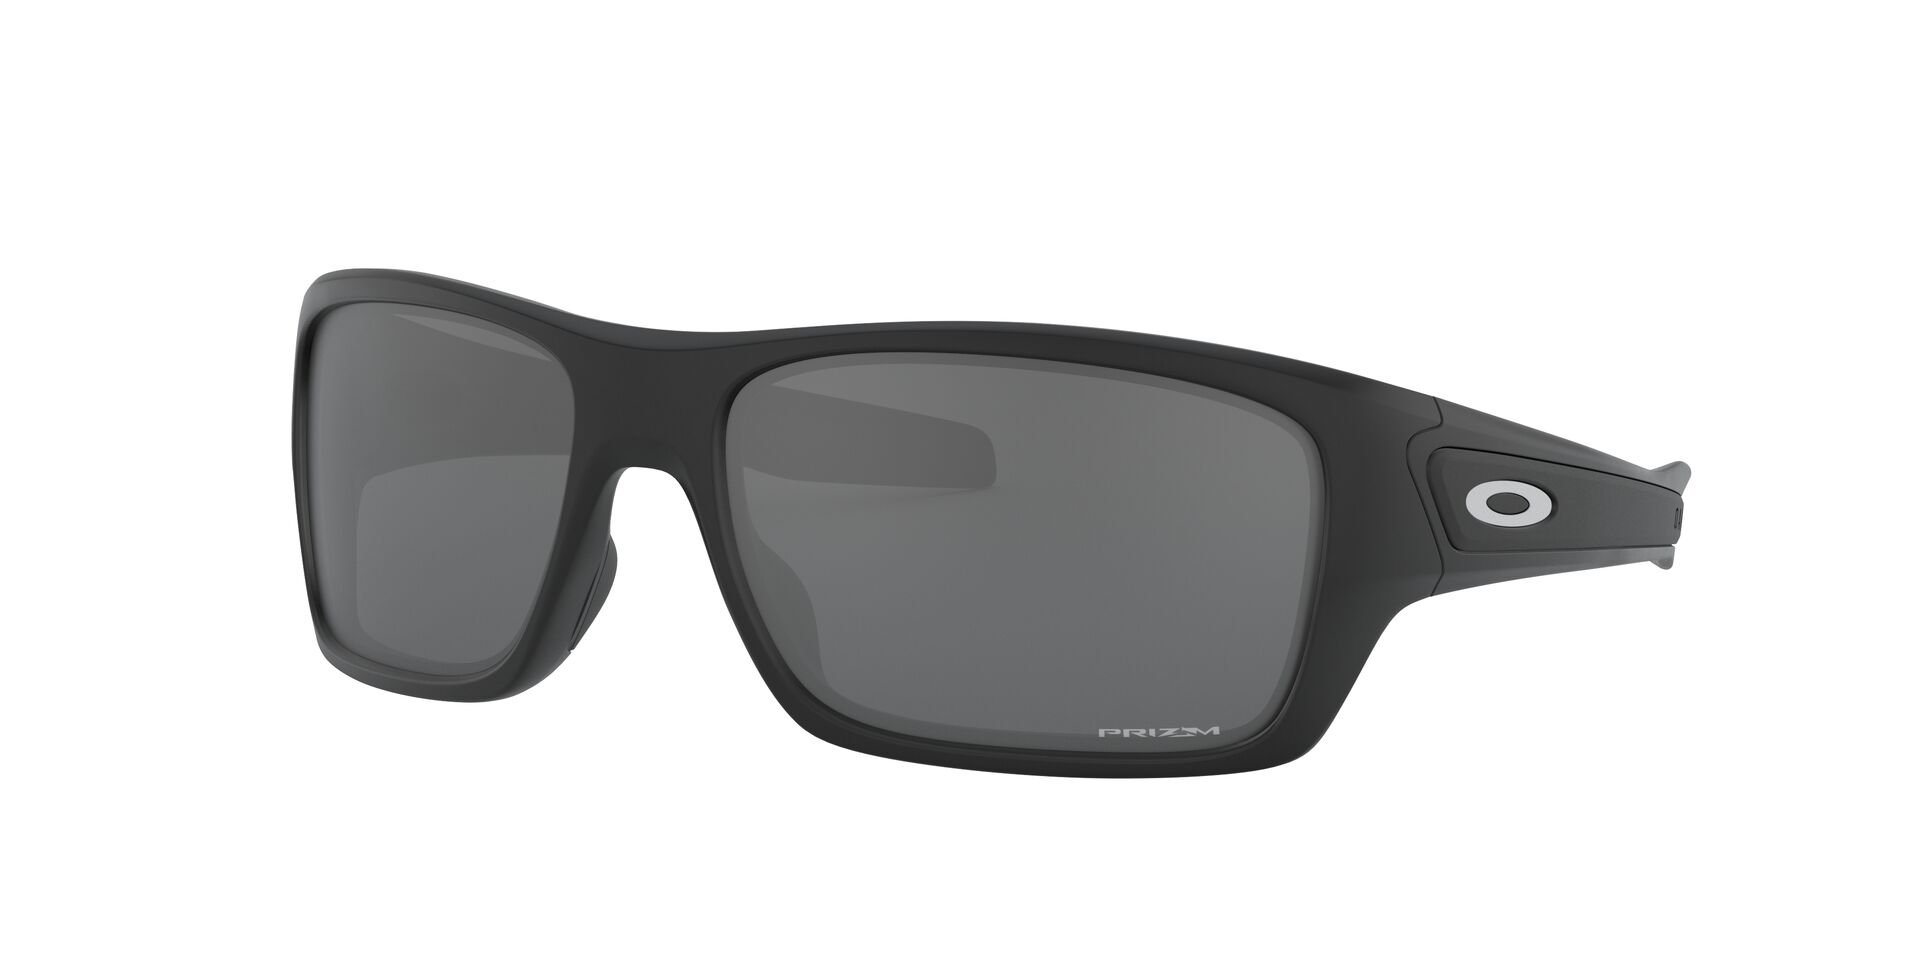 Das Bild zeigt die Sonnenbrille OO9263 92642  von der Marke Oakley in schwarz.